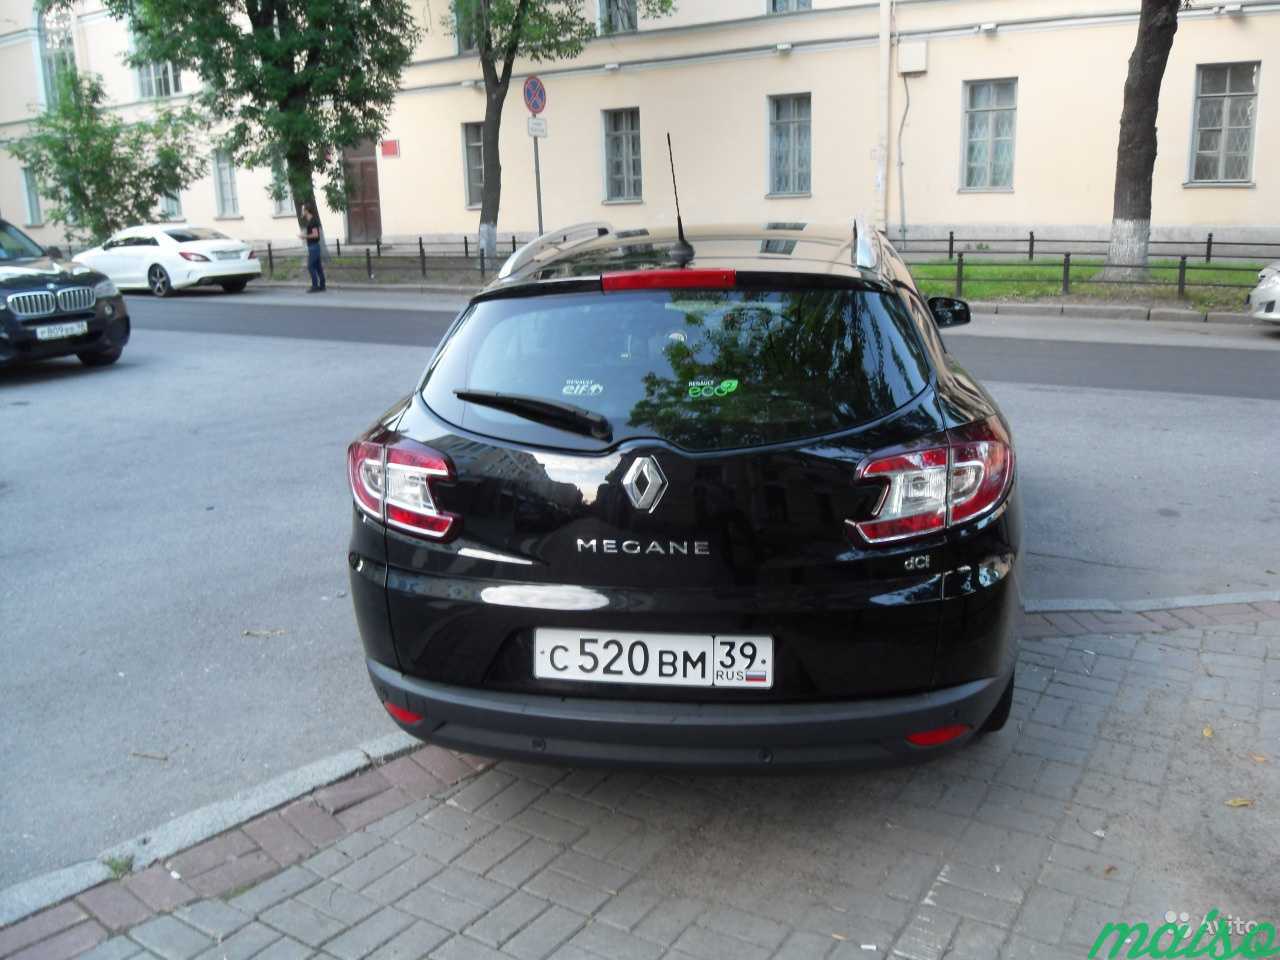 Аренда авто для такси дизель в Санкт-Петербурге. Фото 5